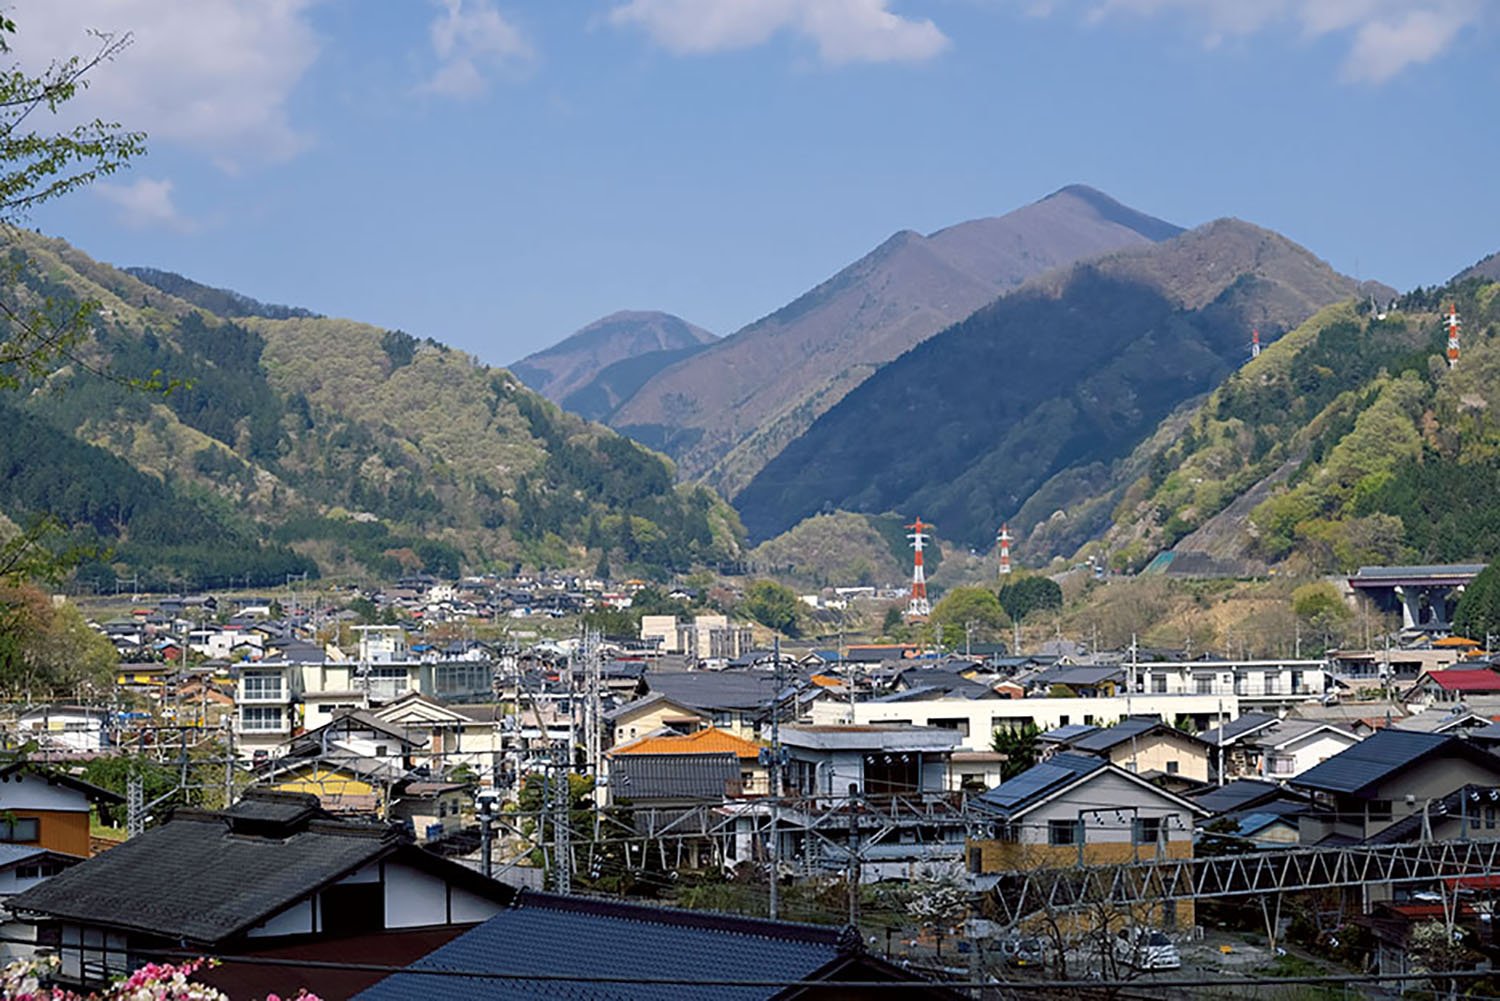 初狩駅から線路をくぐった先の自徳寺近くからの眺望。高い山は滝子山。